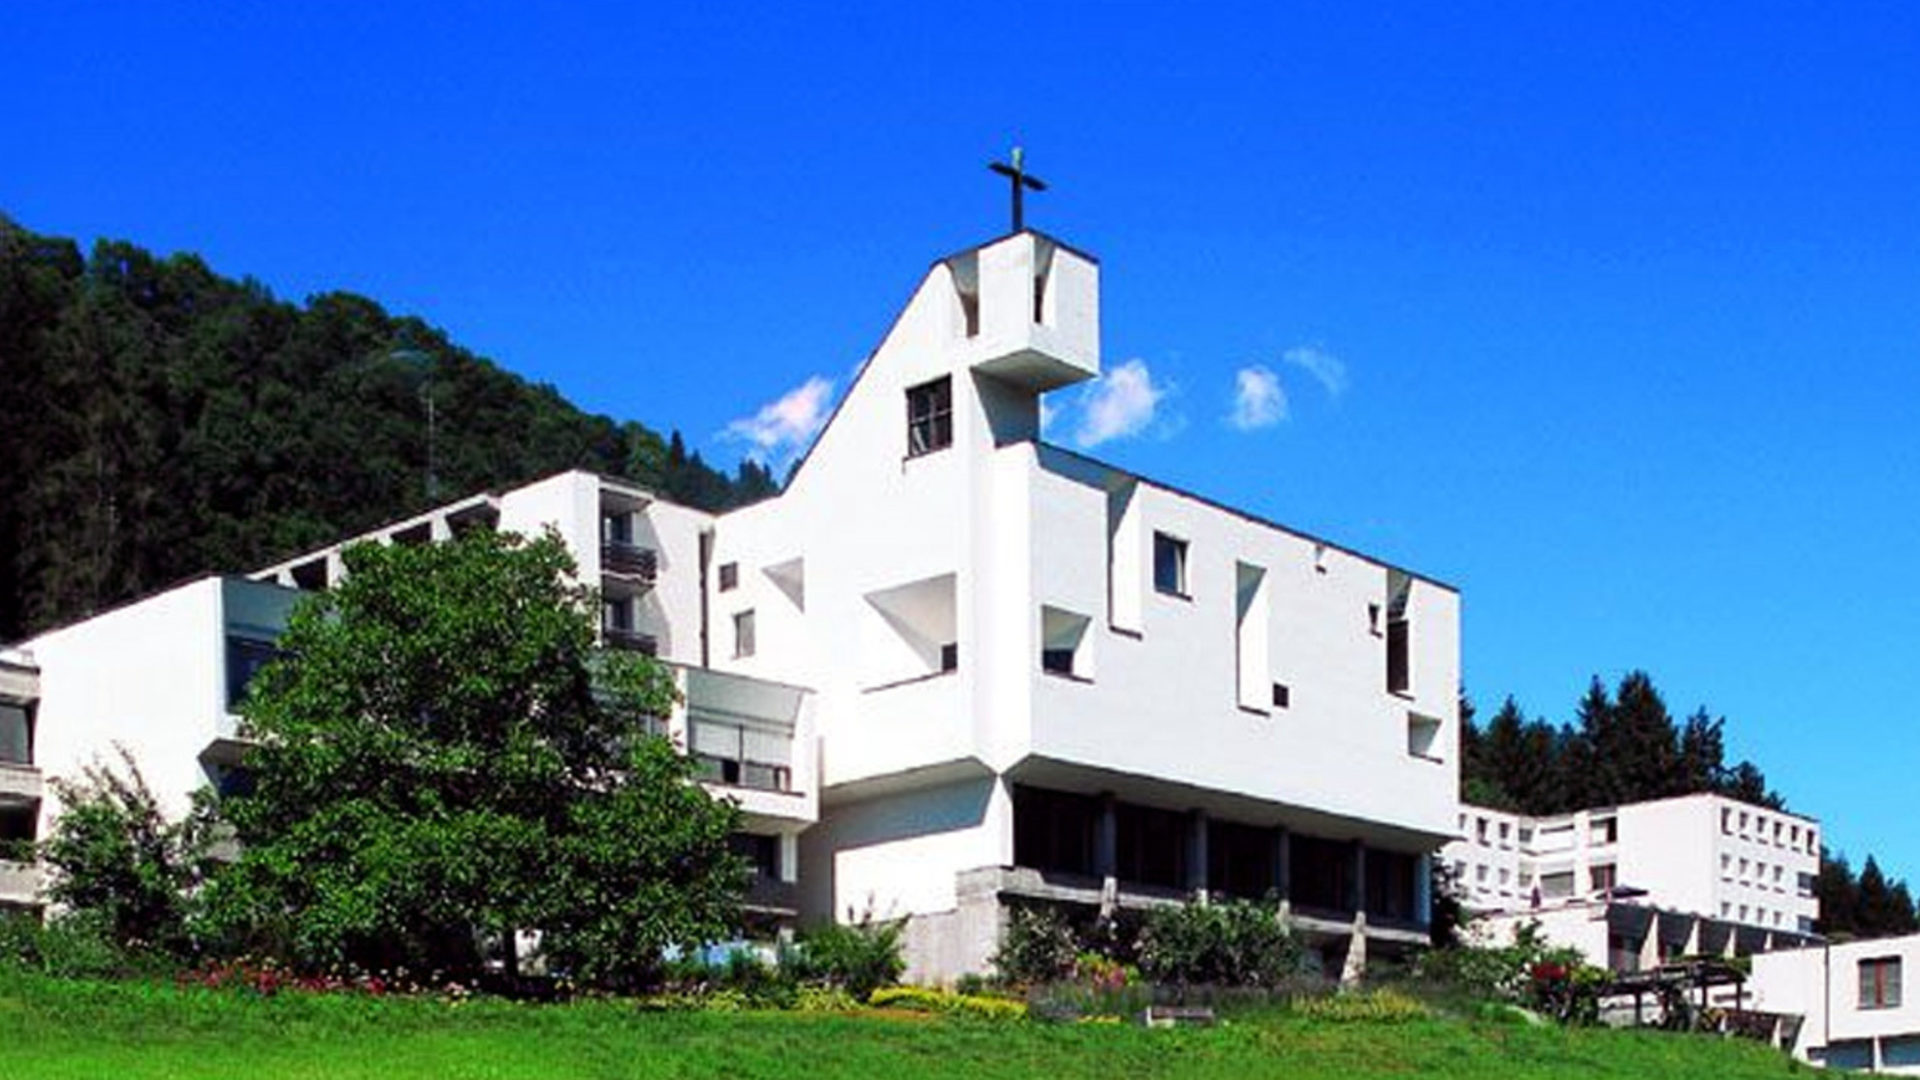 Dominikanerinnen-Kloster in Ilanz GR